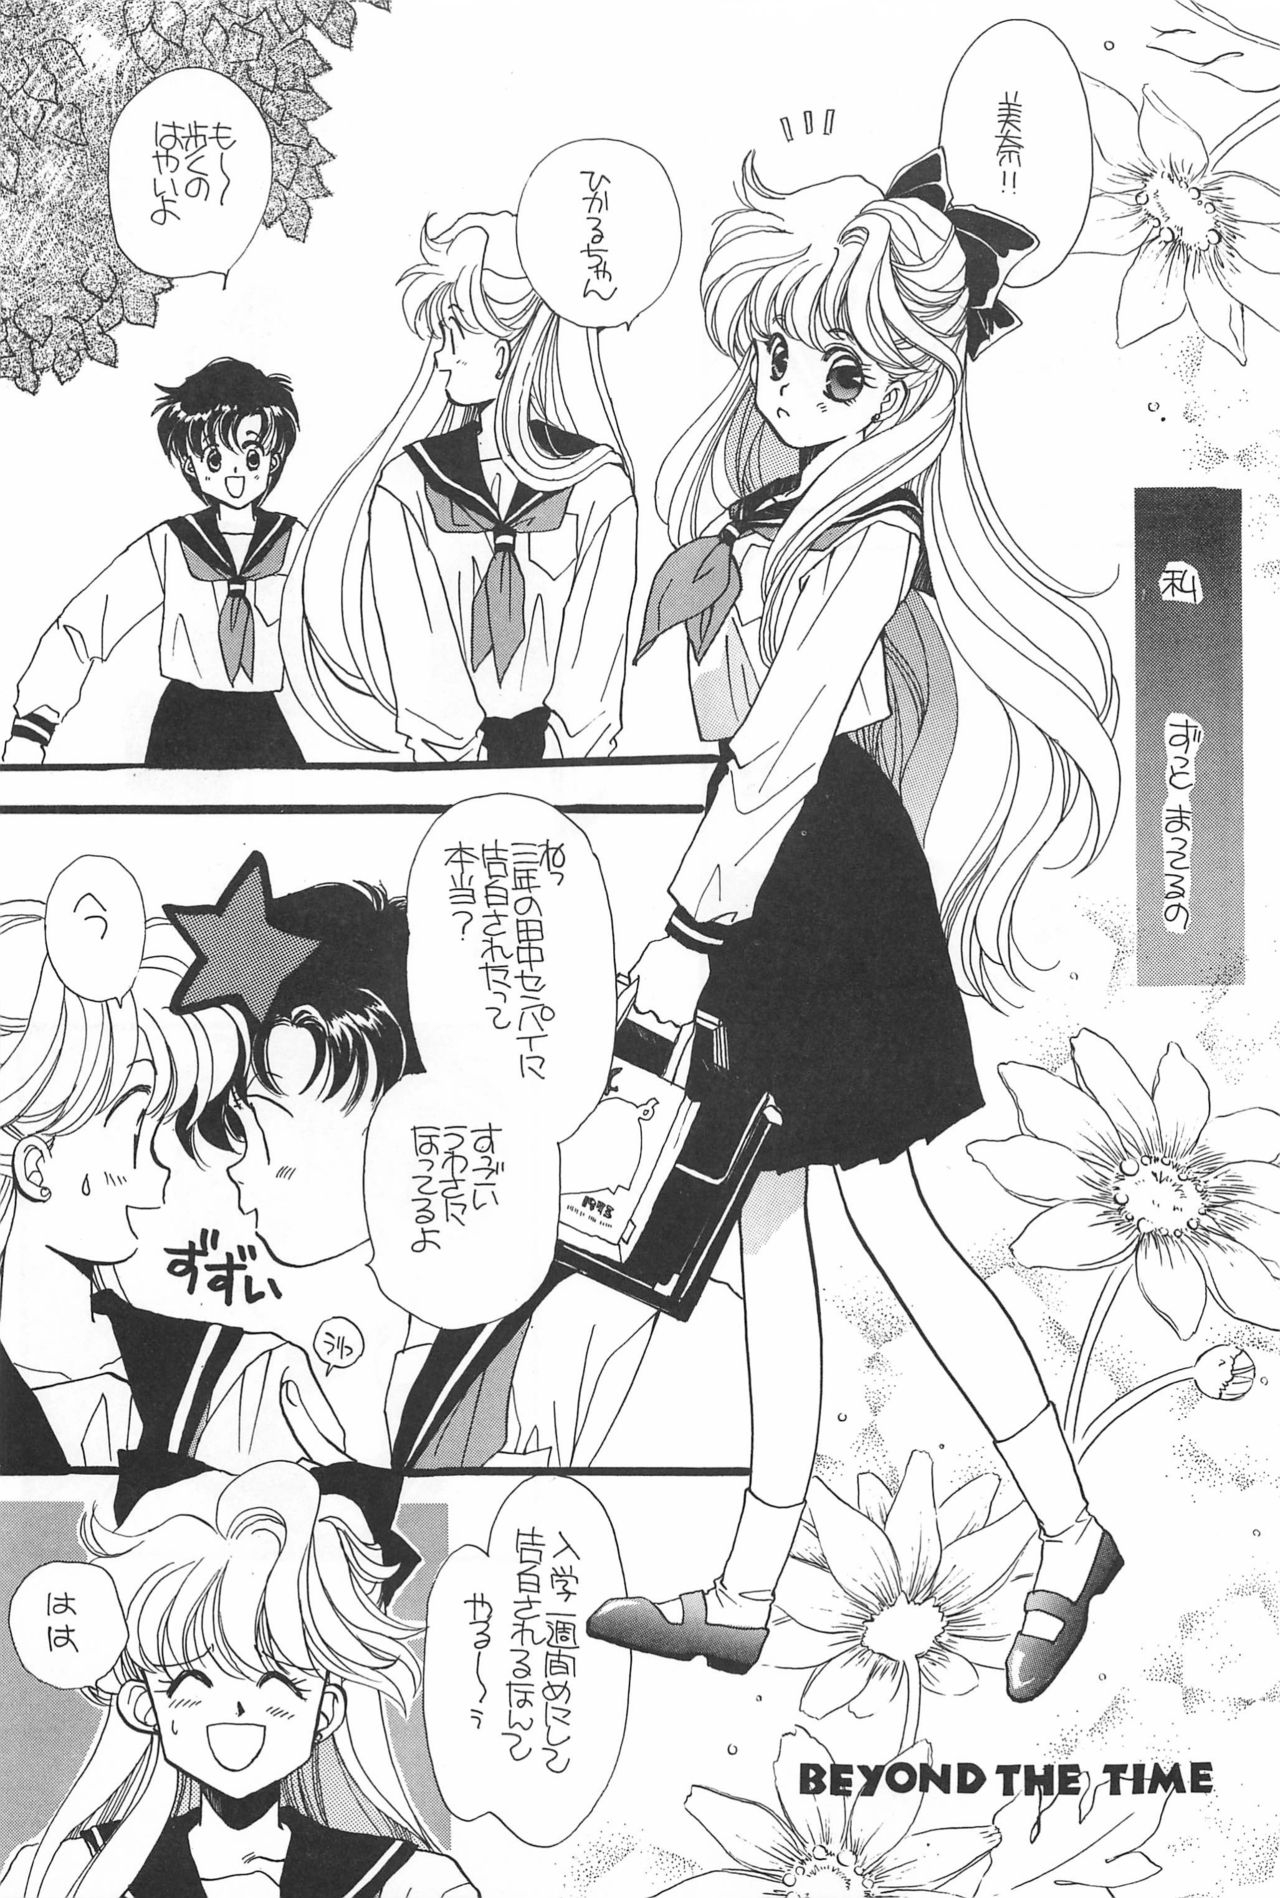 [Hello World (Muttri Moony)] Kaze no You ni Yume no You ni - Sailor Moon Collection (Sailor Moon) 72